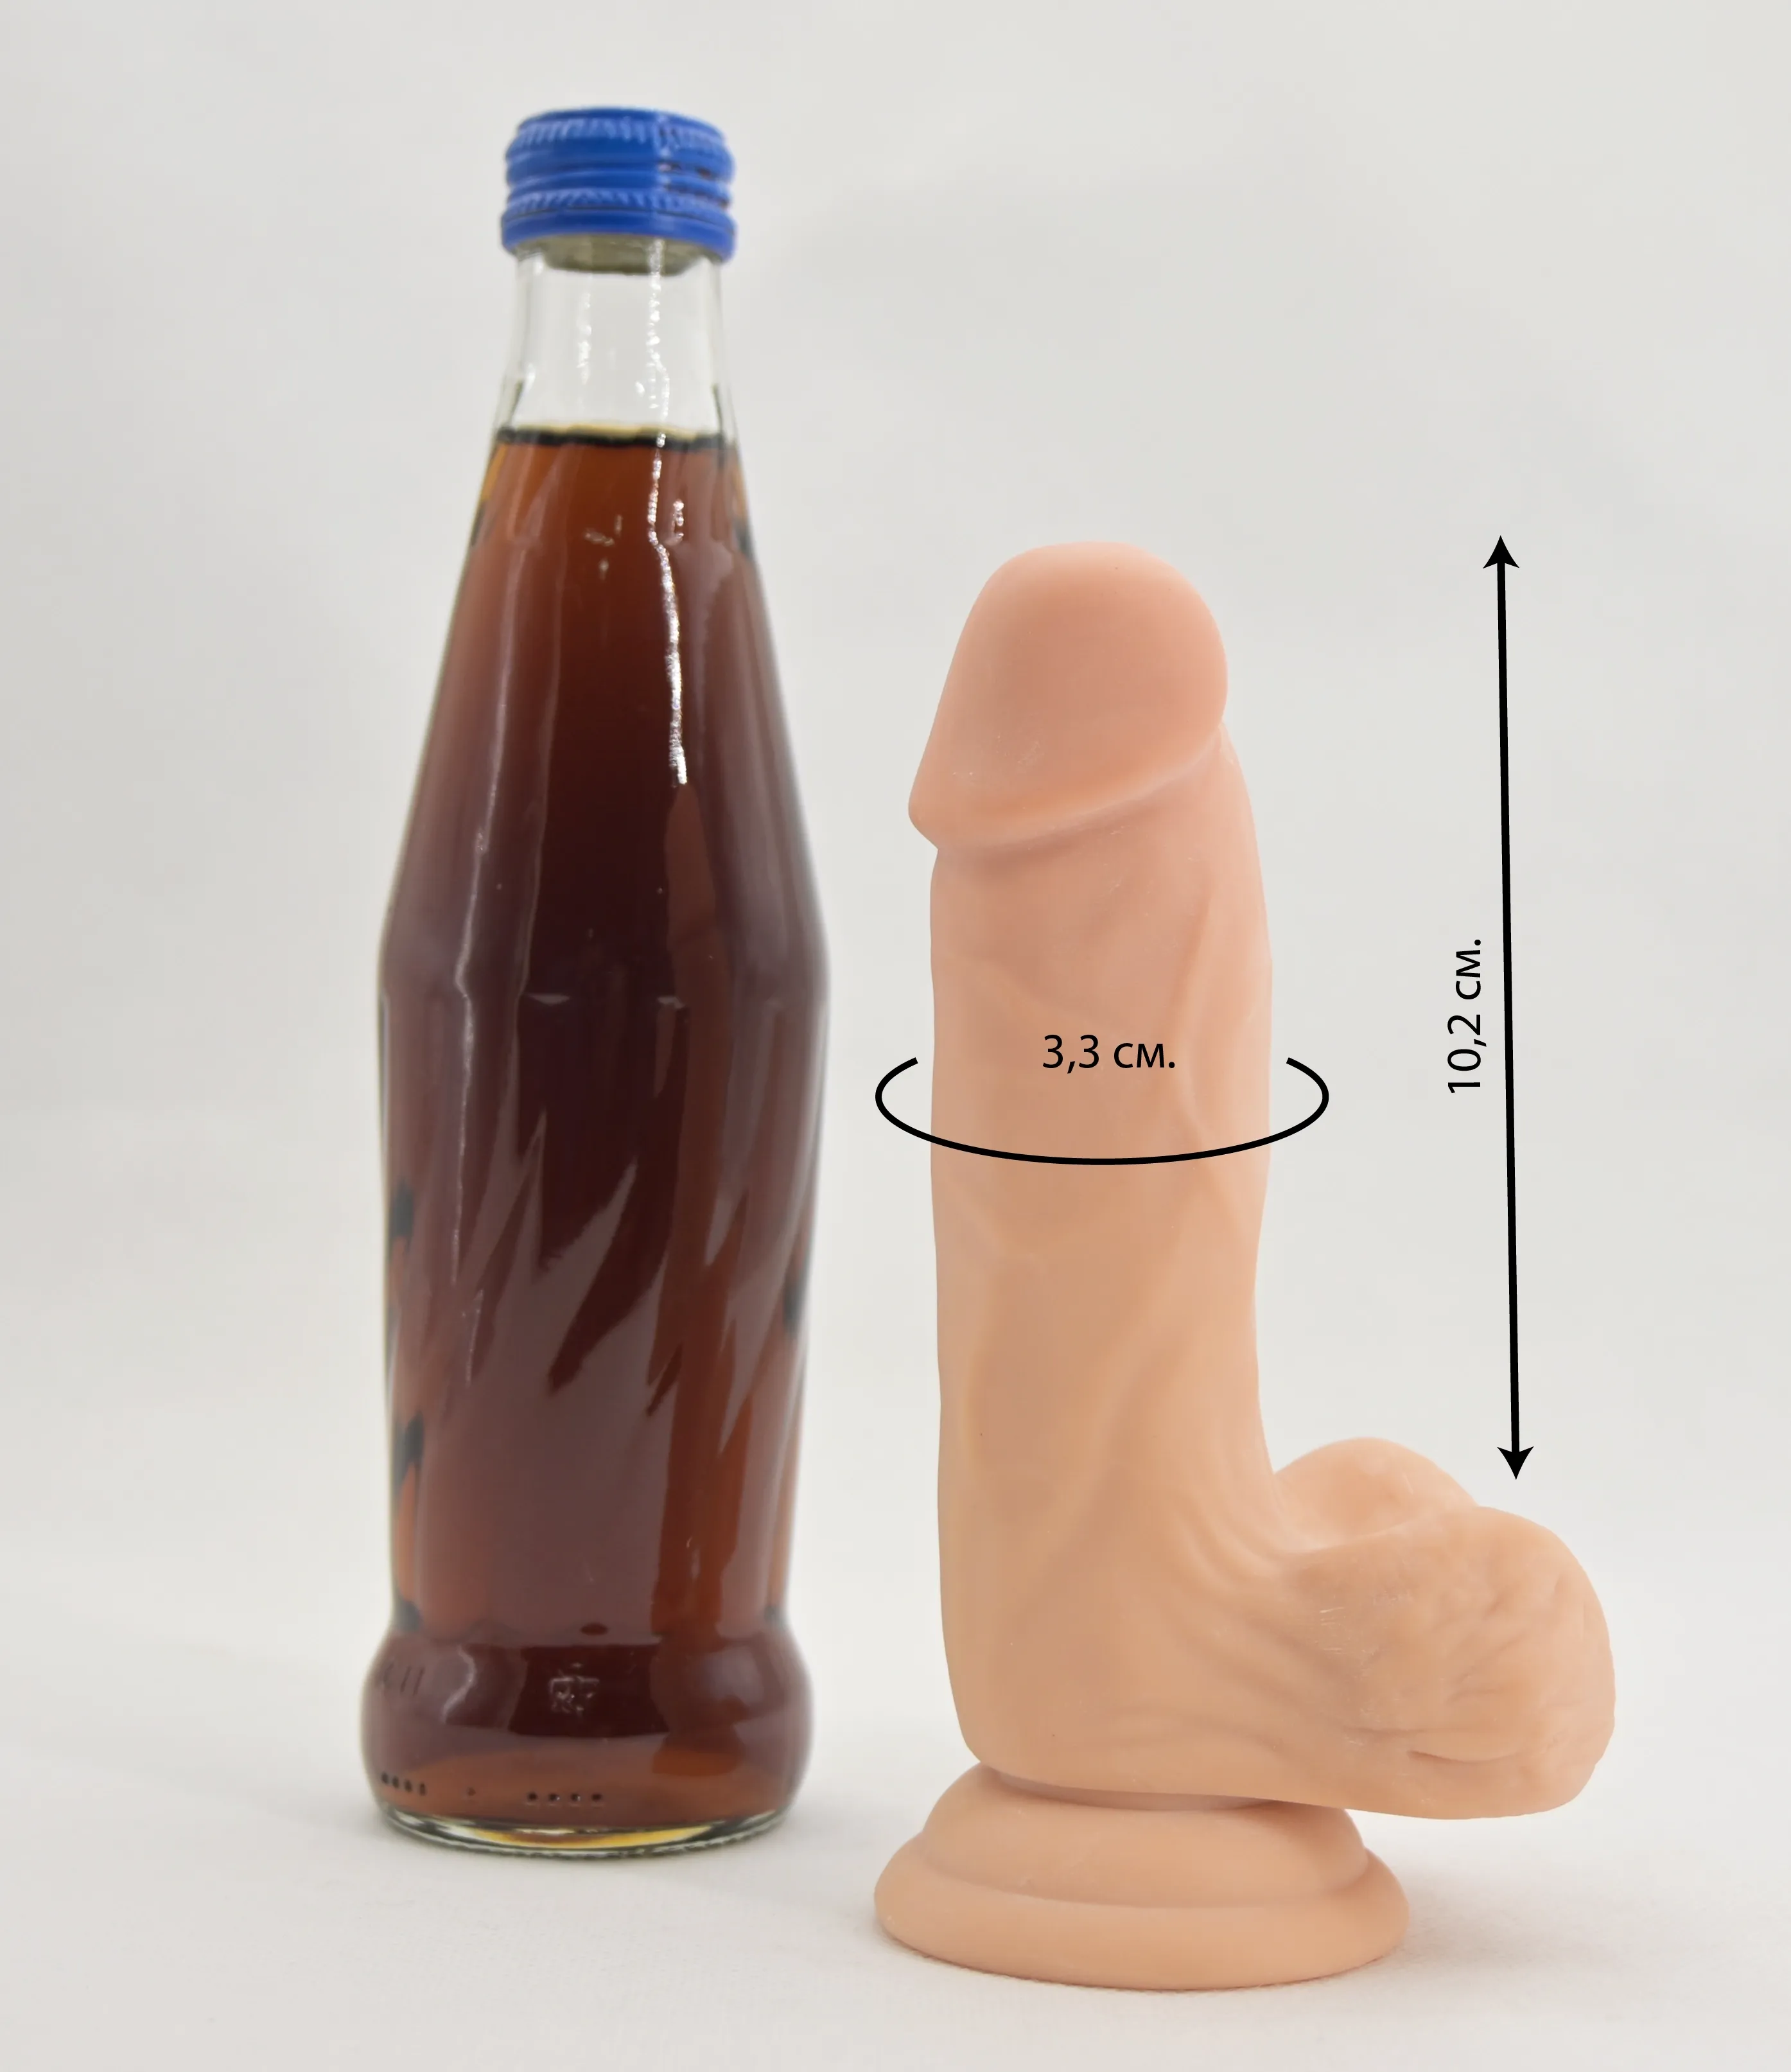 Размеры и сравнение с бутылкой 0,33